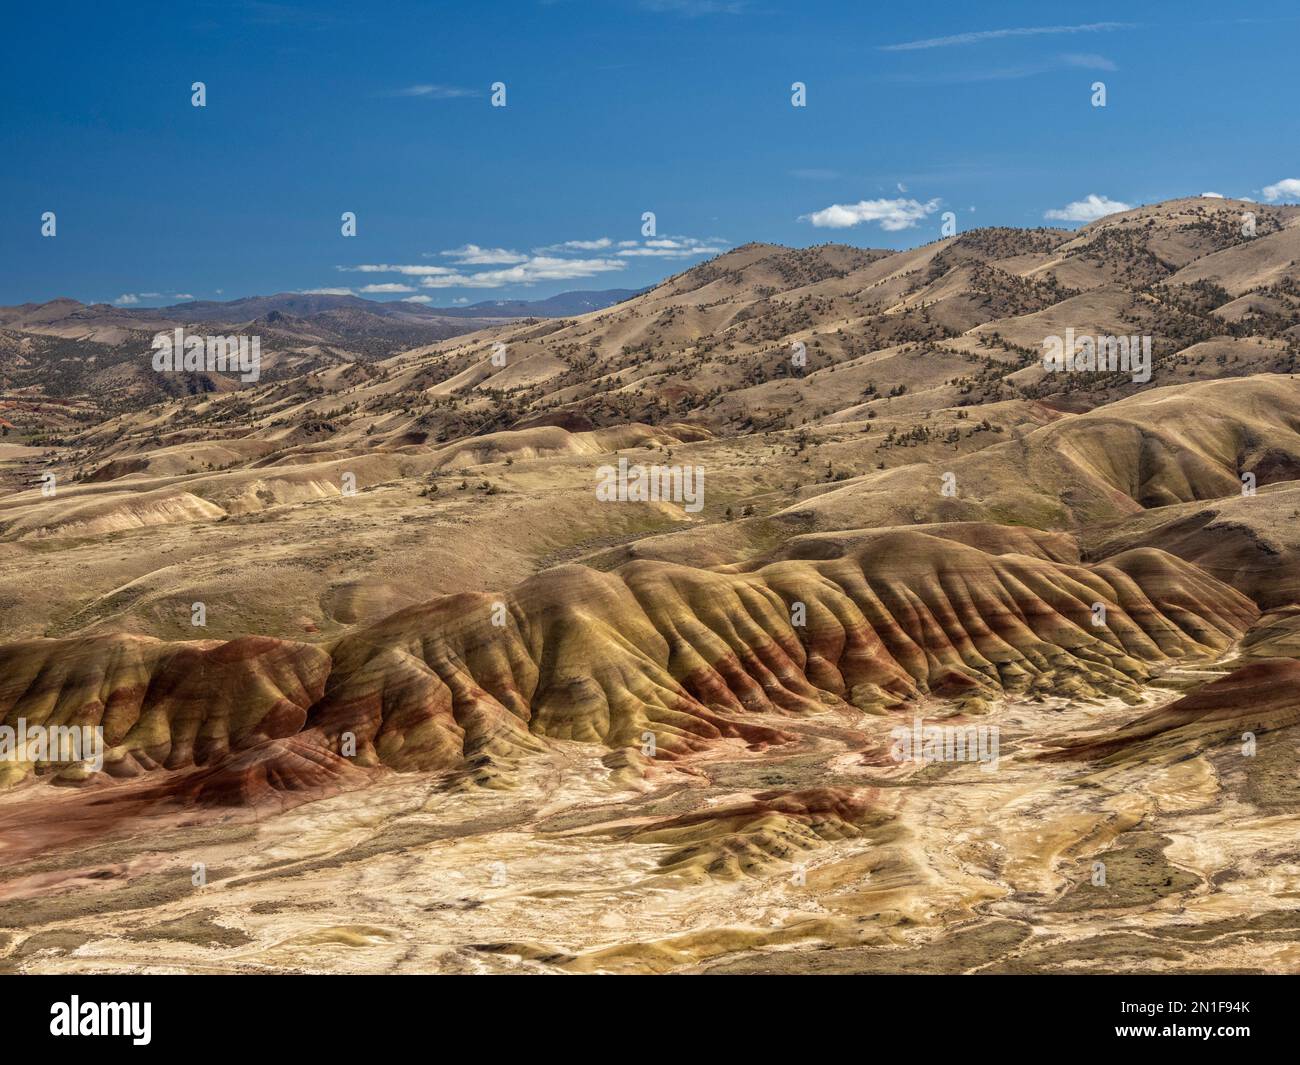 The Painted Hills, classificato come una delle sette meraviglie dell'Oregon, John Day Fossil Beds National Monument, Oregon, Stati Uniti d'America Foto Stock